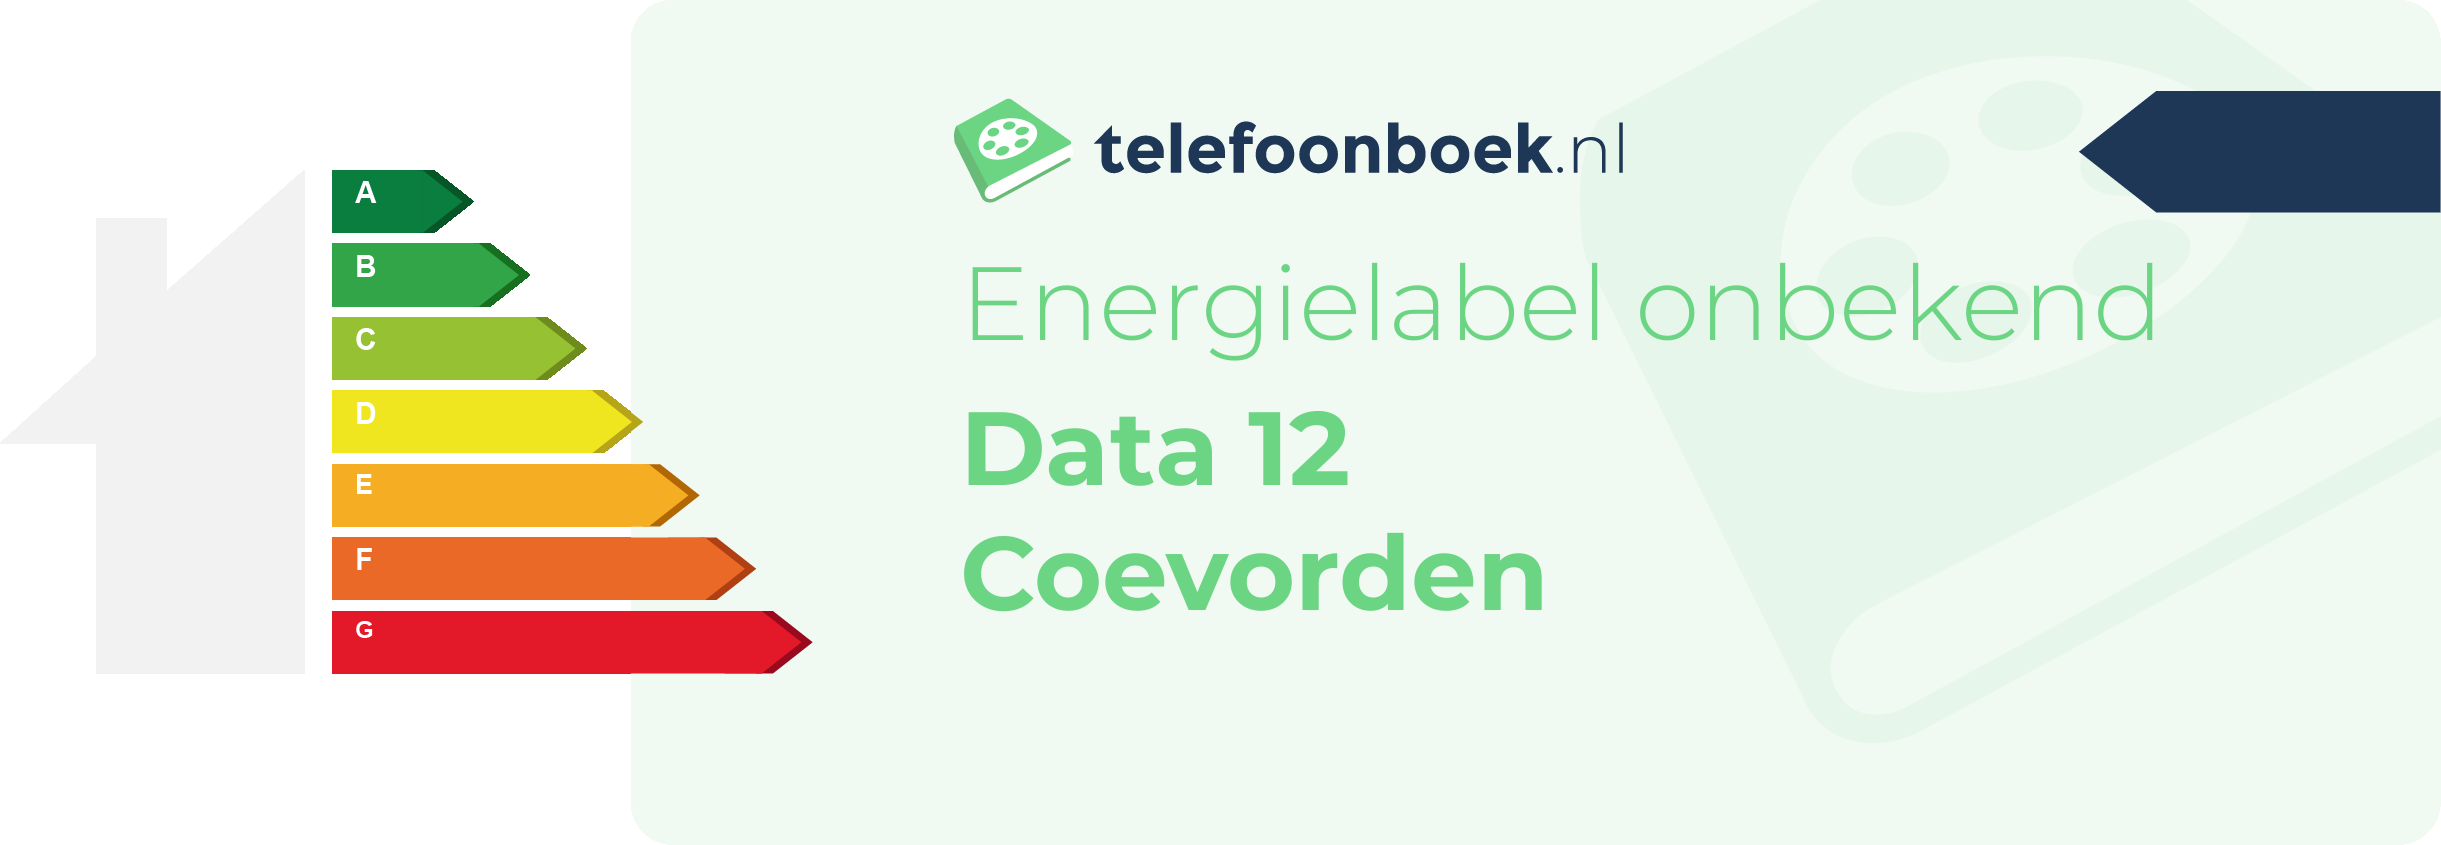 Energielabel Data 12 Coevorden